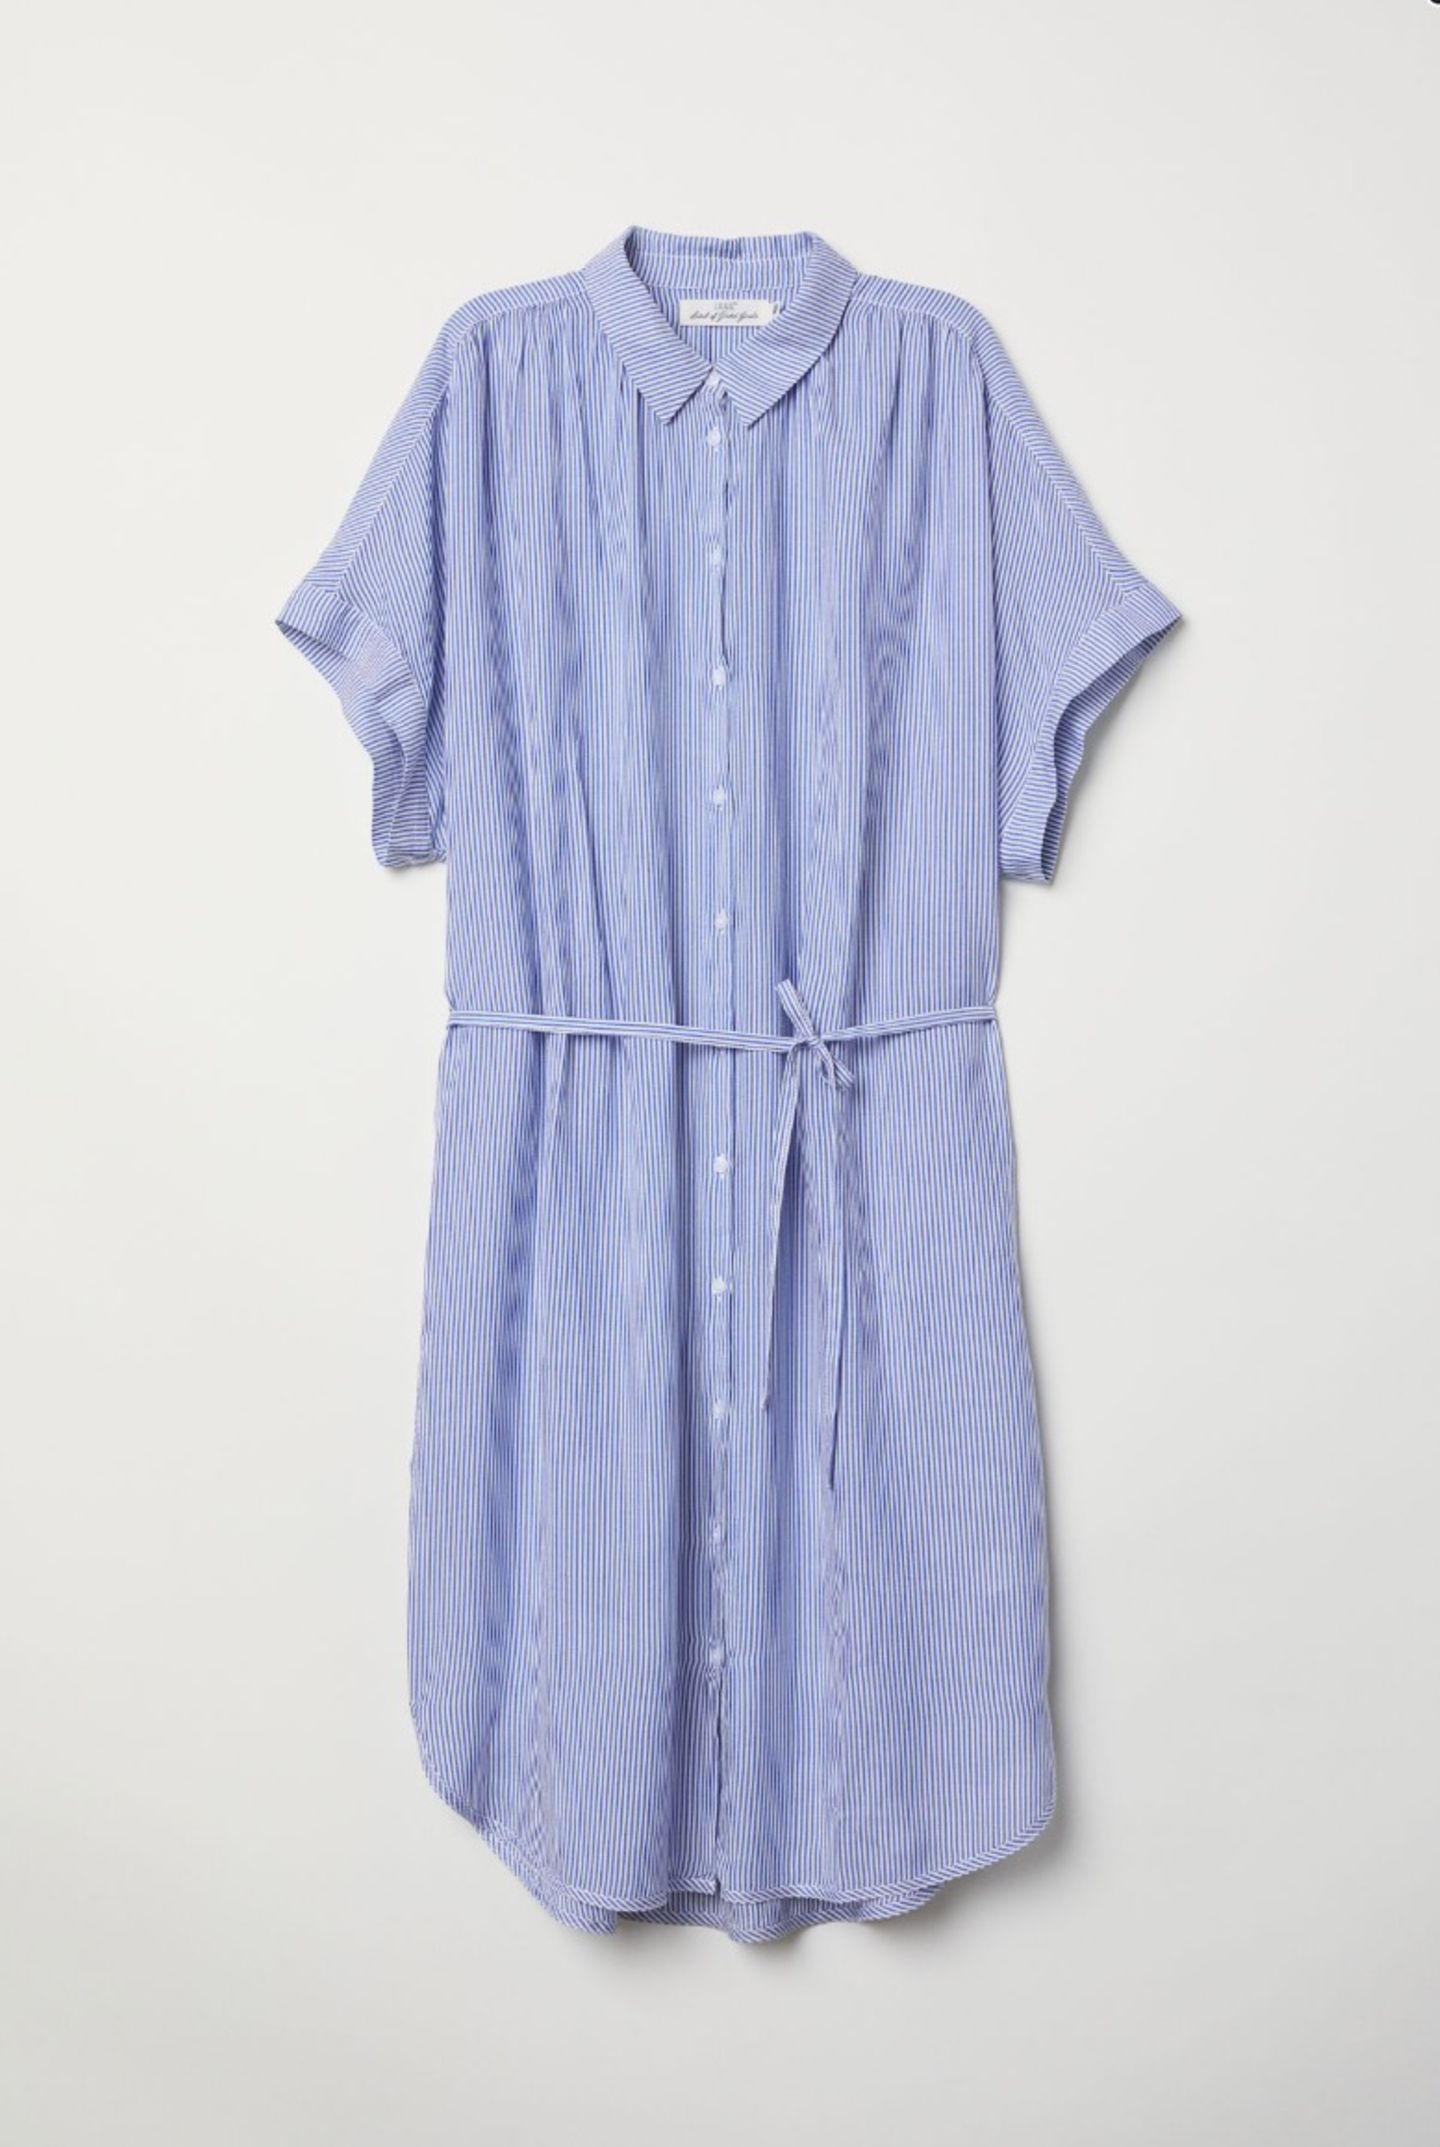 Luftig und schick fürs Büro: Mittellanges Hemdblusenkleid von H&M, um 30 Euro.